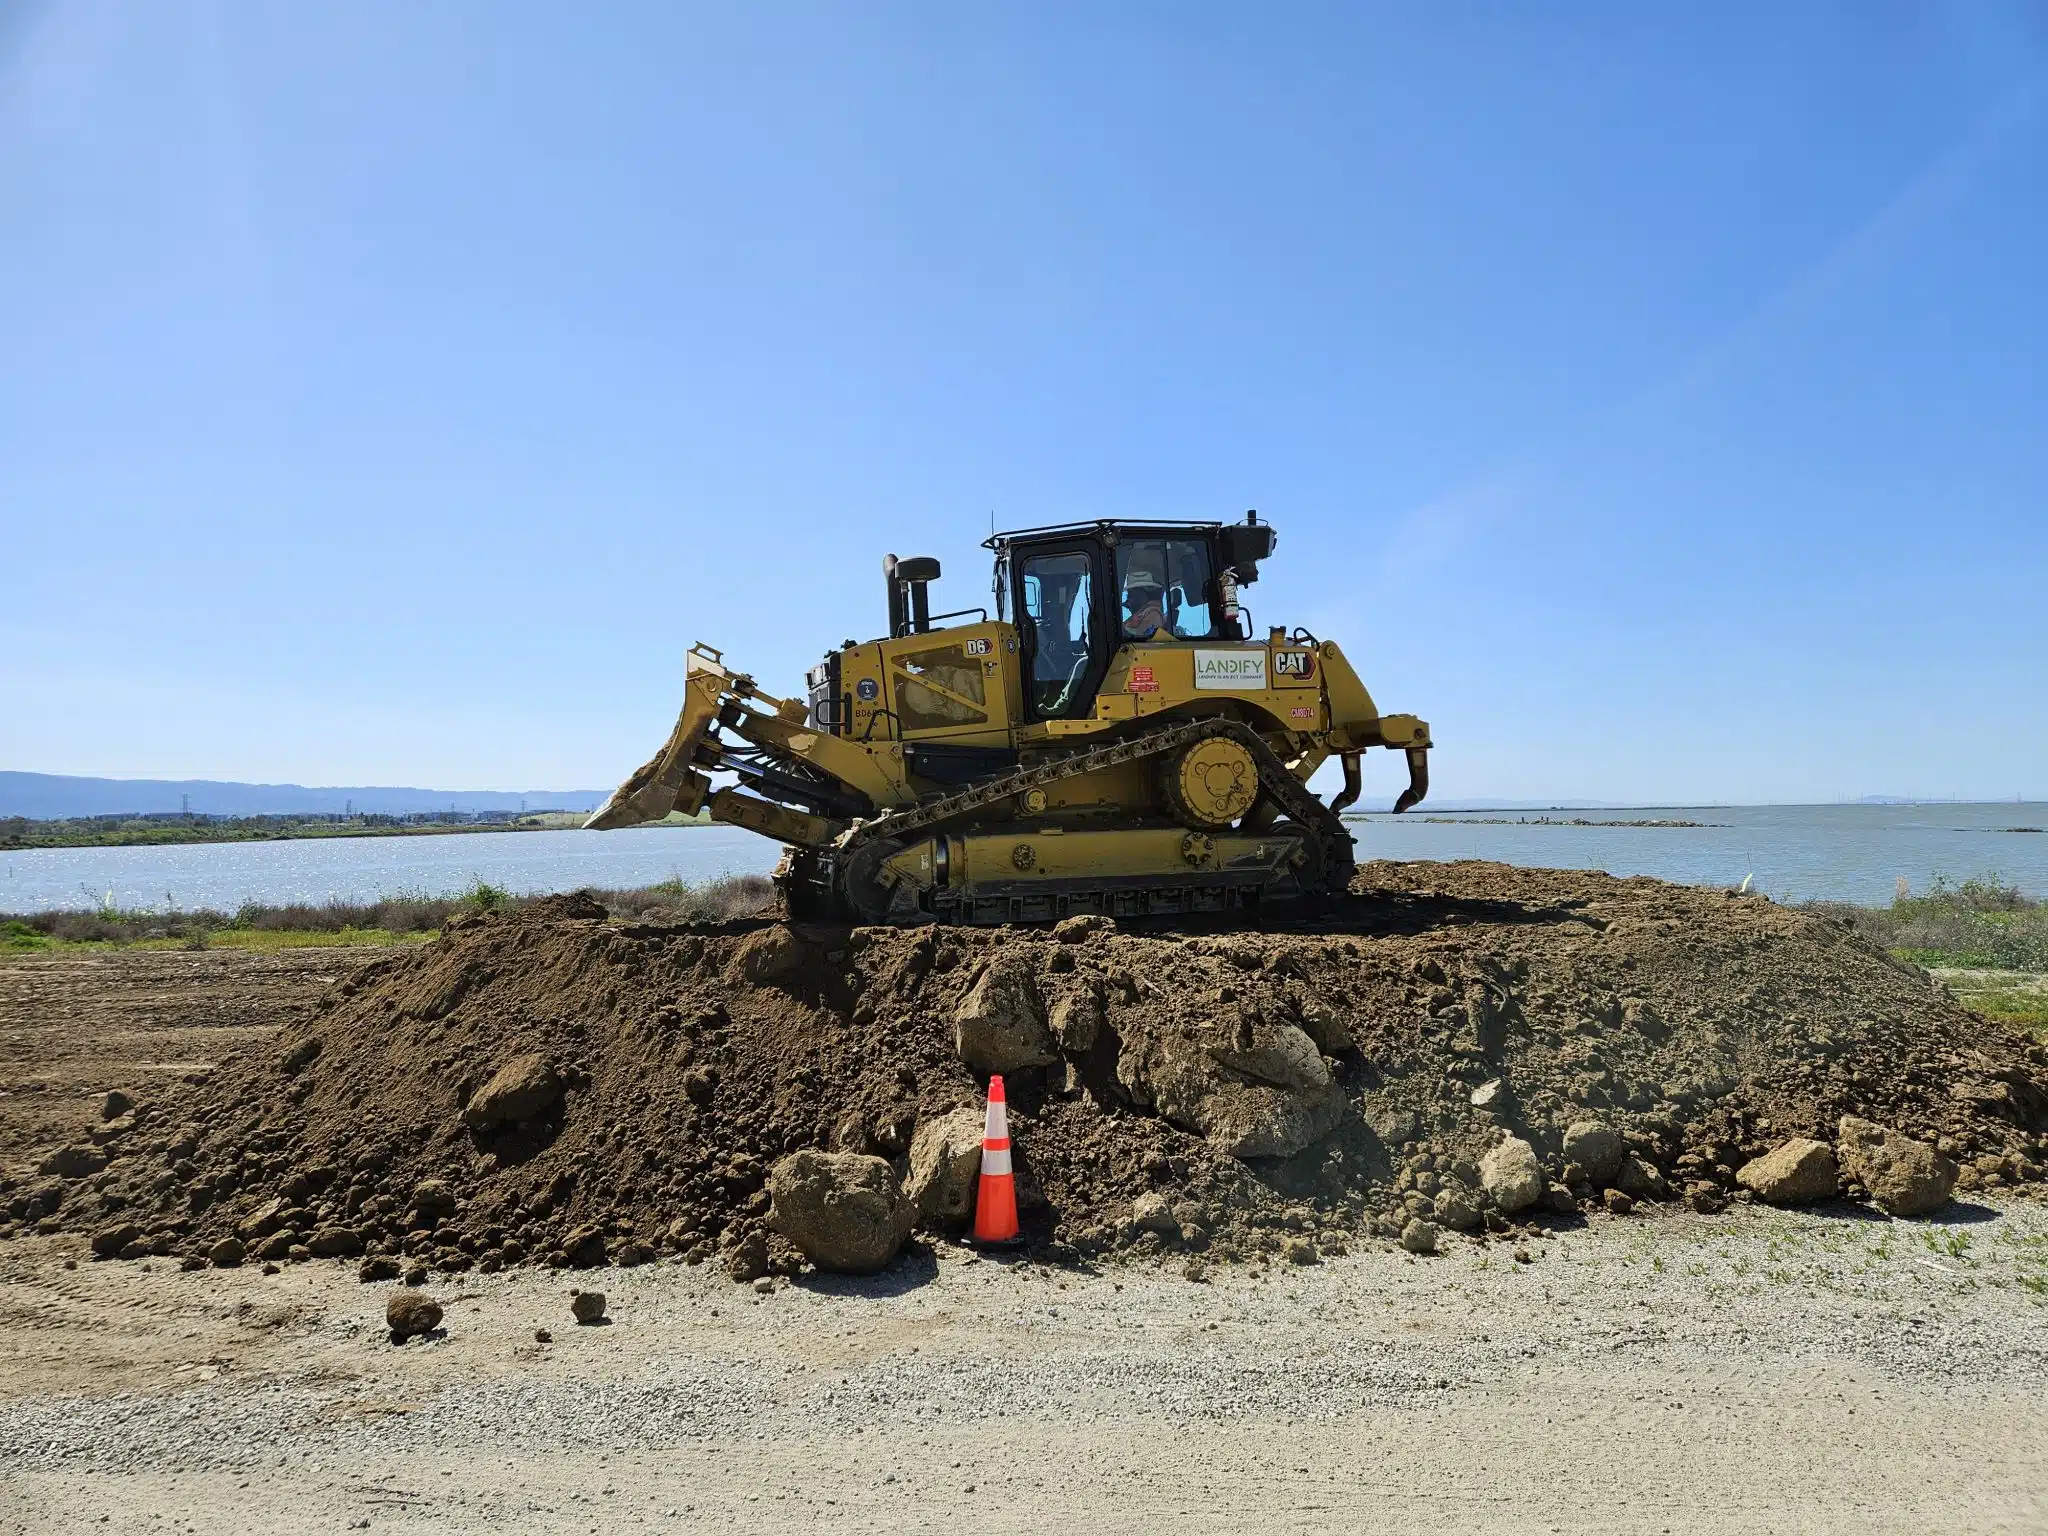 Landify ECT Corporation, filiale américaine d'ECT, accueille ses premiers cubic yards de terres excavées du BTP californien